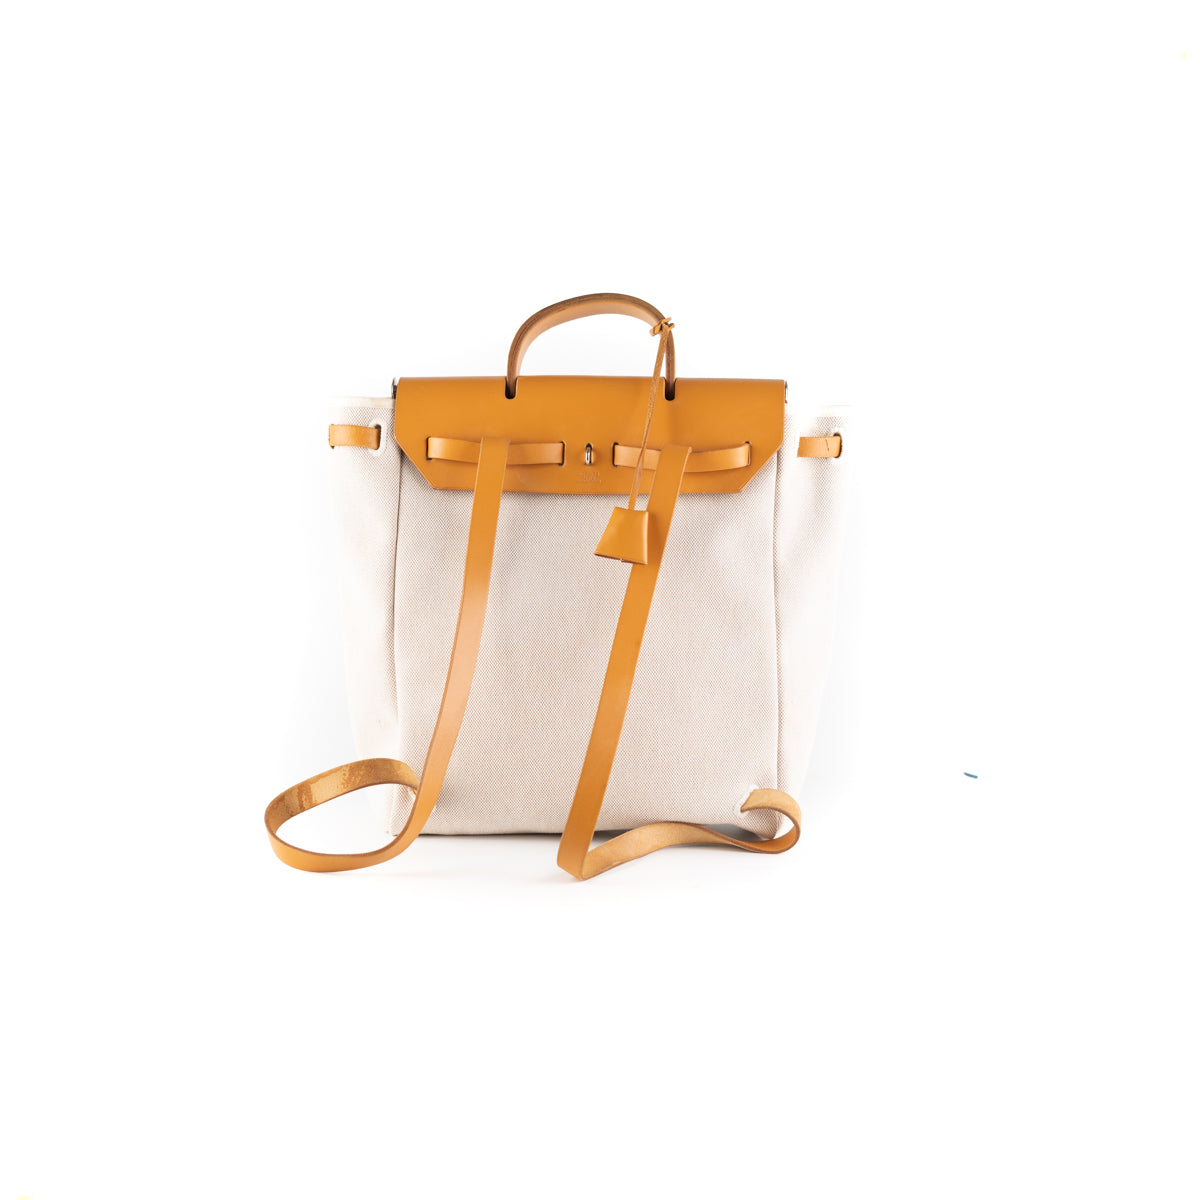 Hermès Backpack Herbag